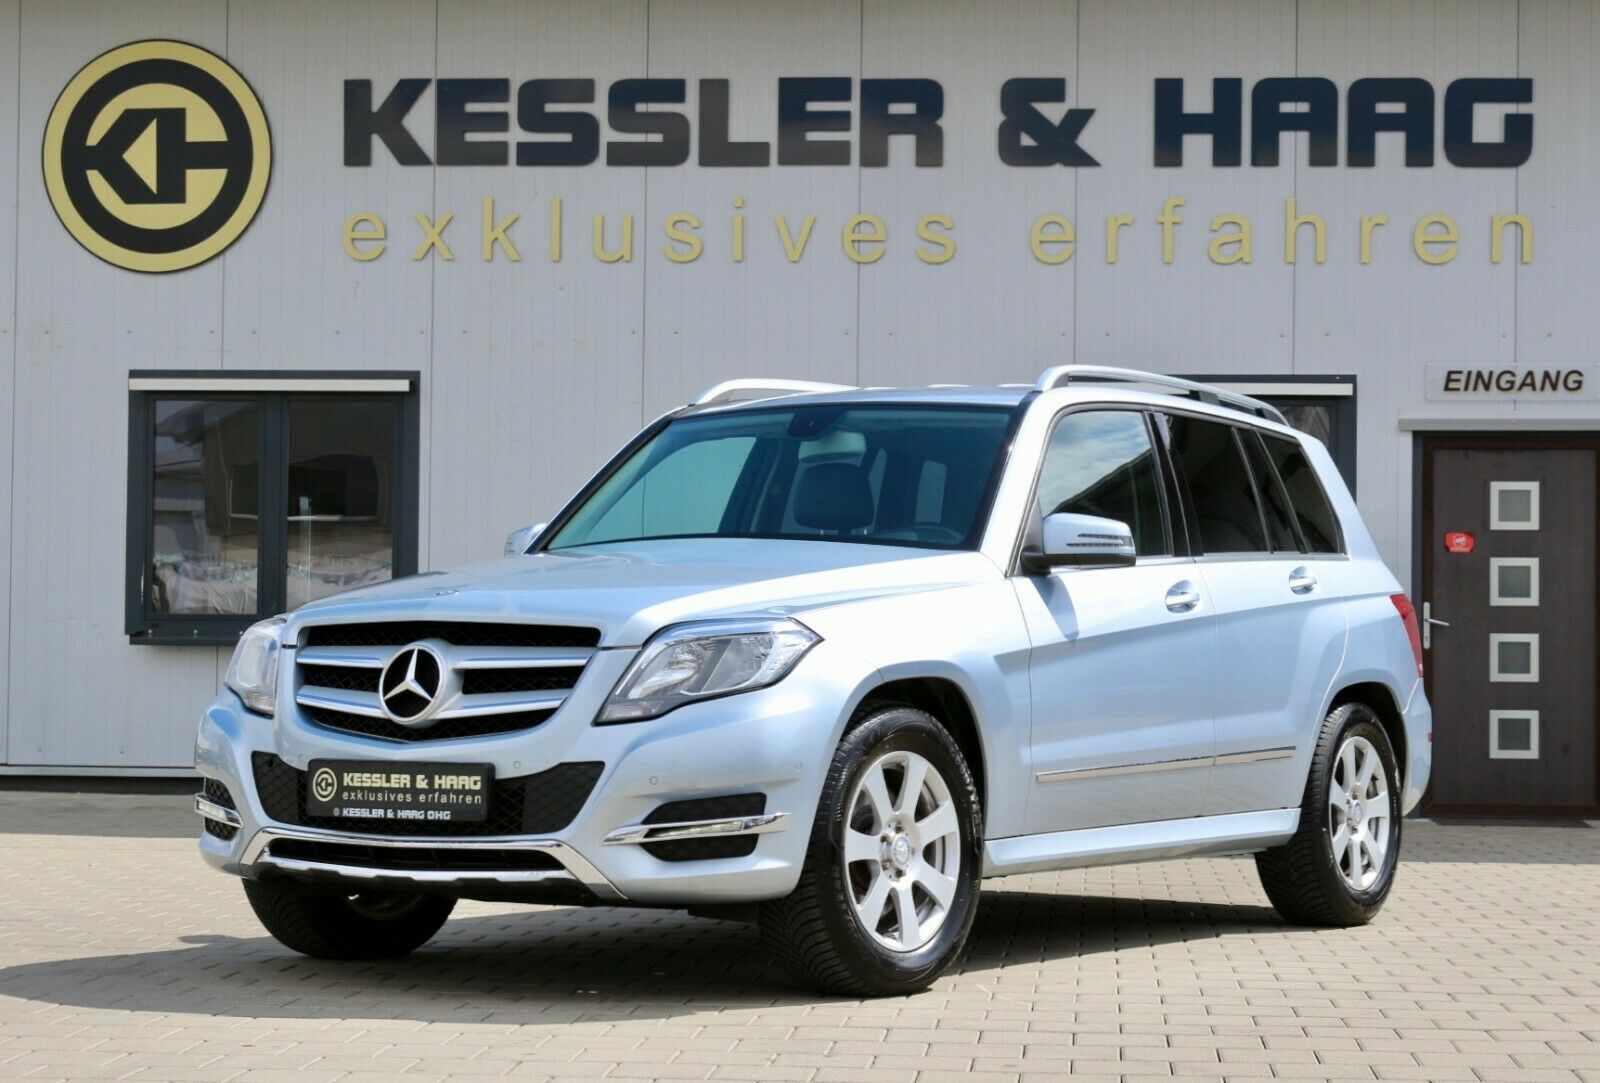 Mercedes-Benz GLK 250 CDI 4-Matic gebraucht kaufen in Albstadt Preis 23490  eur - Int.Nr.: 678 VERKAUFT